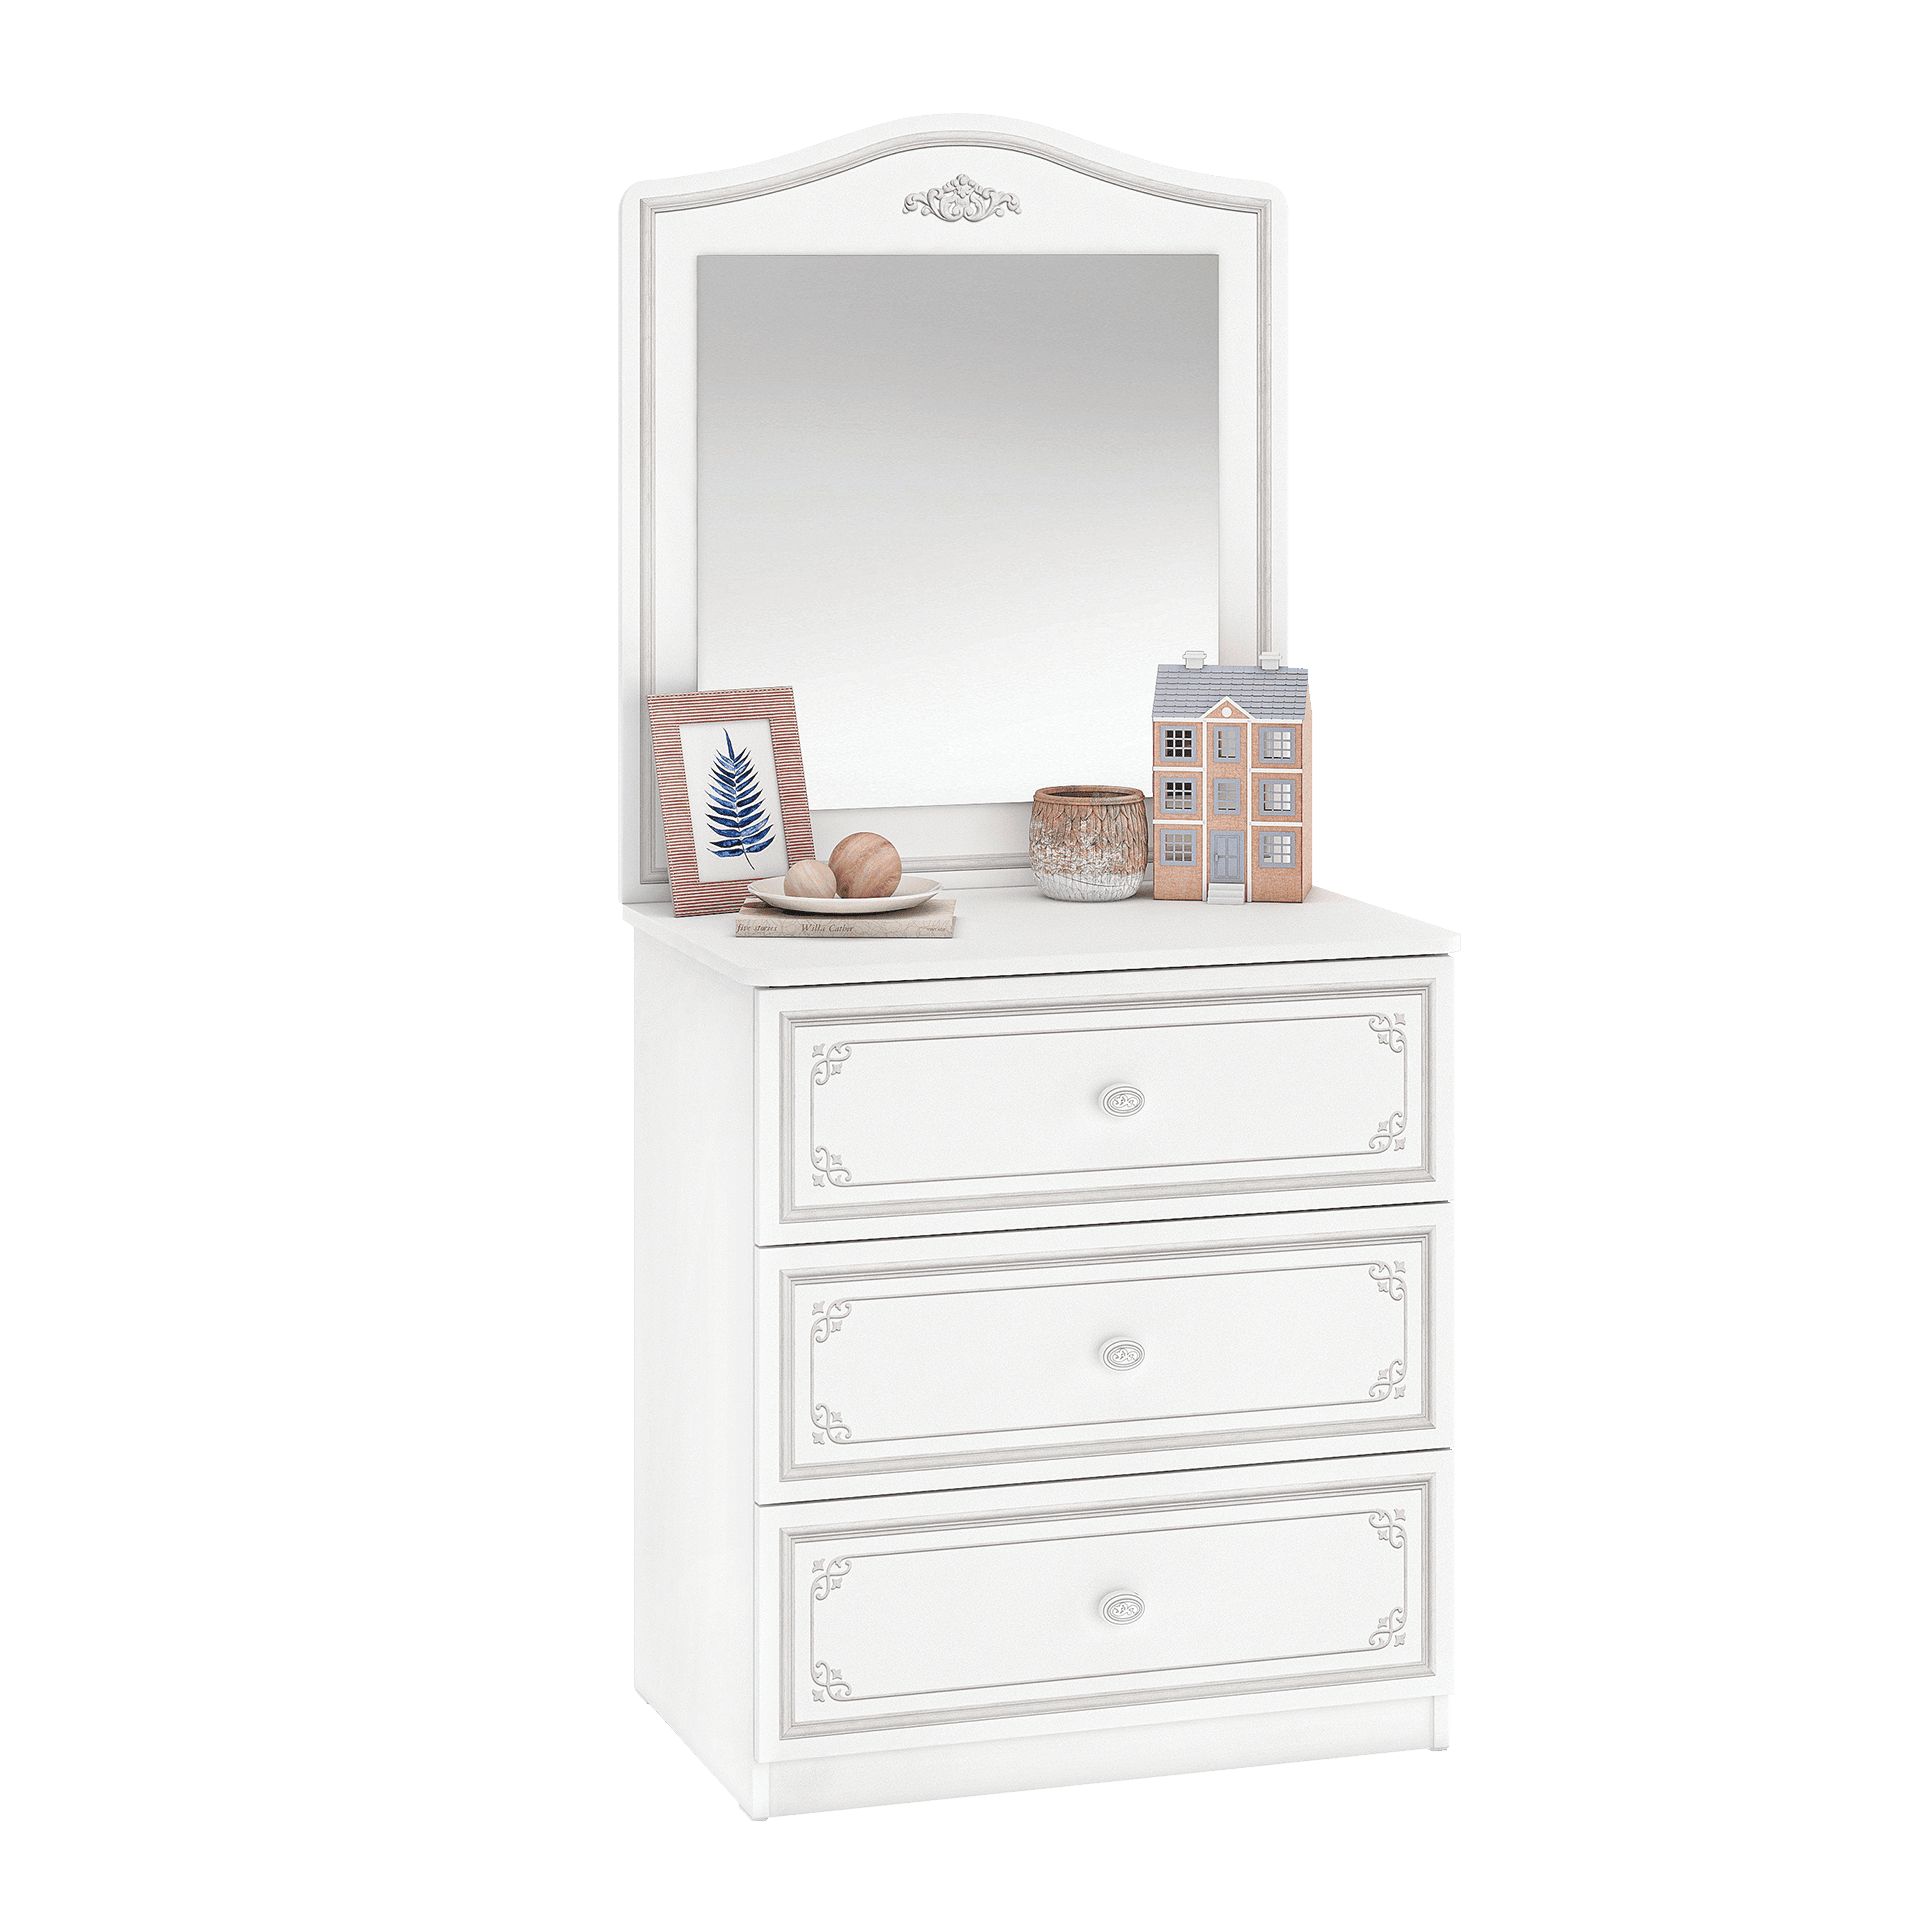 Cilek Selena Grey Dresser Mirror Only (Fits dresser and large dresser) - Kids Haven